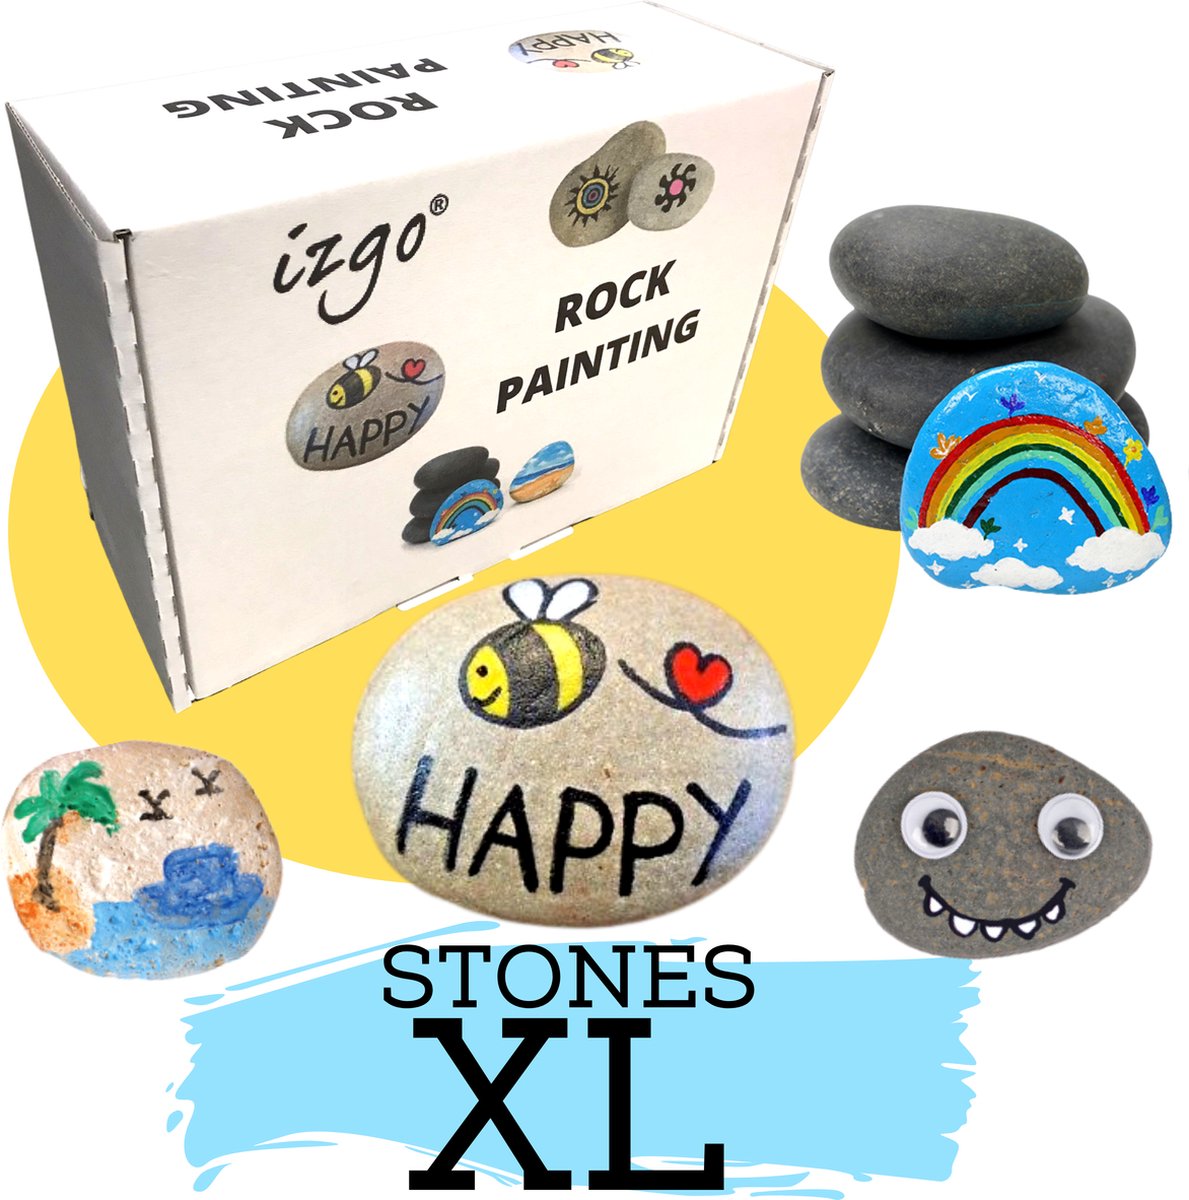 Stenen Schilderen volwassenen - Happy Stones maken kinderen - 55-delig Rock Painting Pakket - Complete Startset met steentjes - Dotting - stippen Mandala - HappyStone keien beschilderen - Creatief - Hobby - IZGO